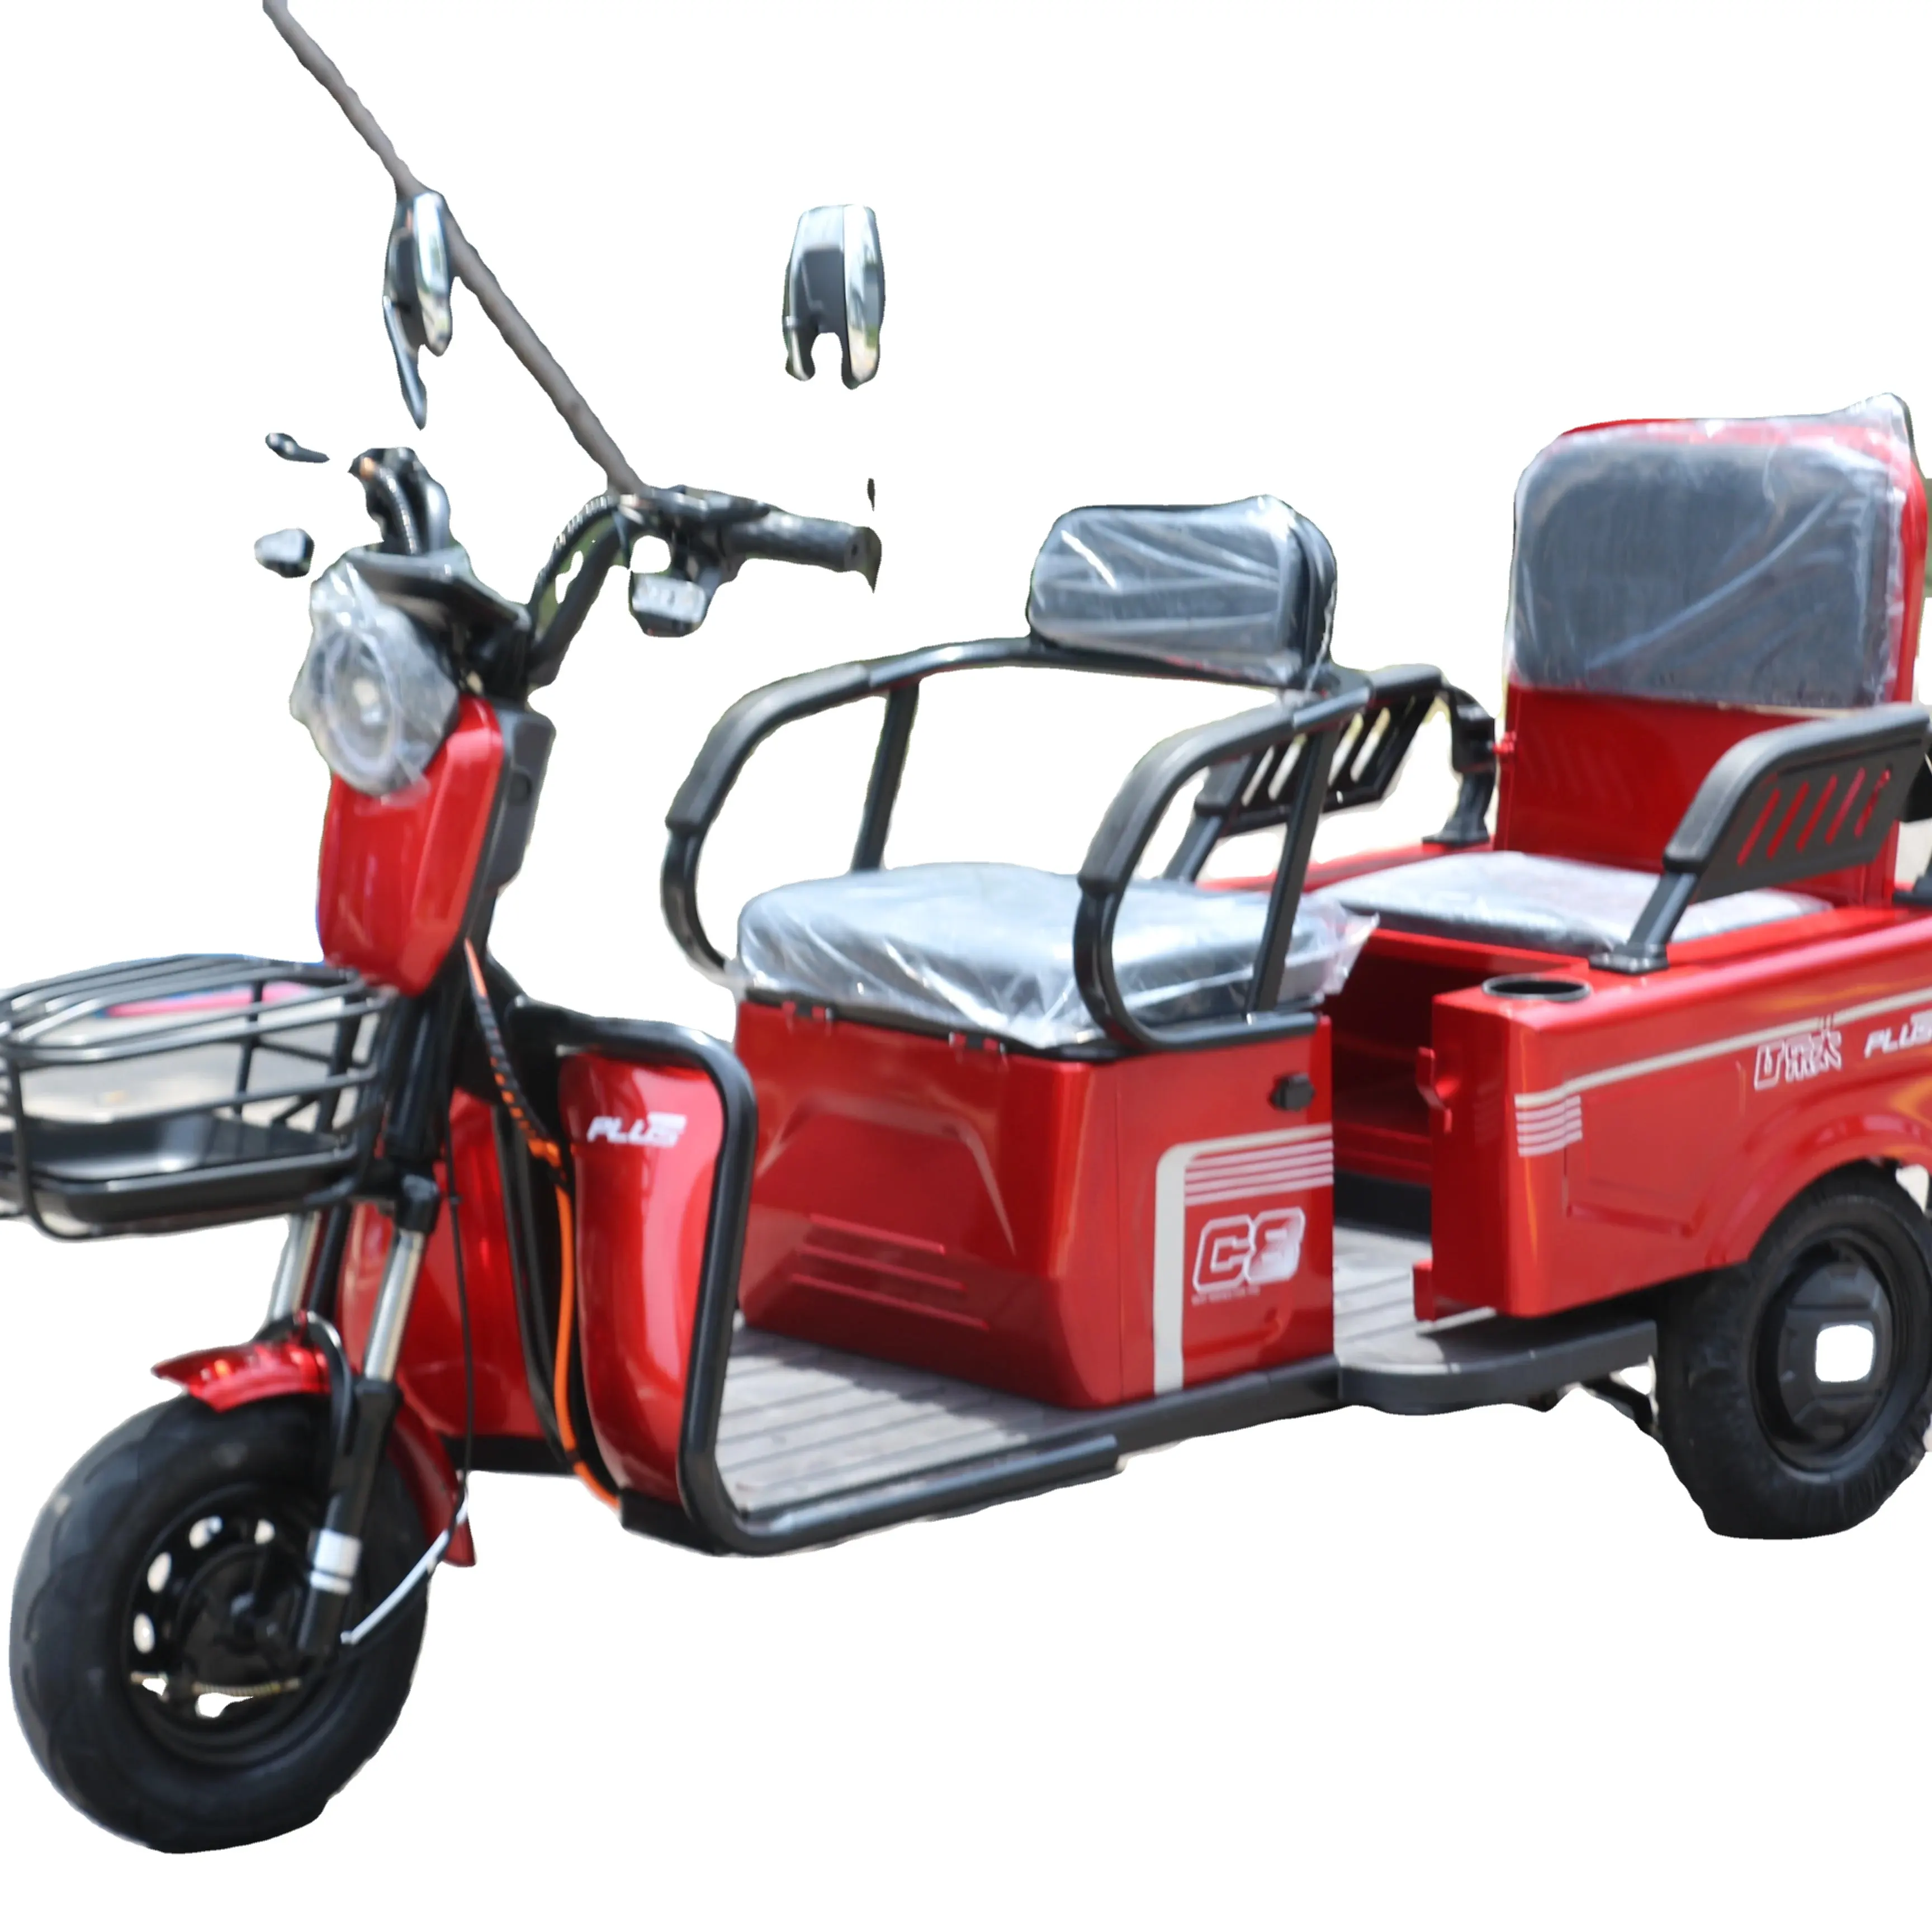 Satılık sıcak satış elektrikli 3 tekerlekli bisiklet taksi/elektrikli kargo motosiklet üç tekerlekli bisiklet